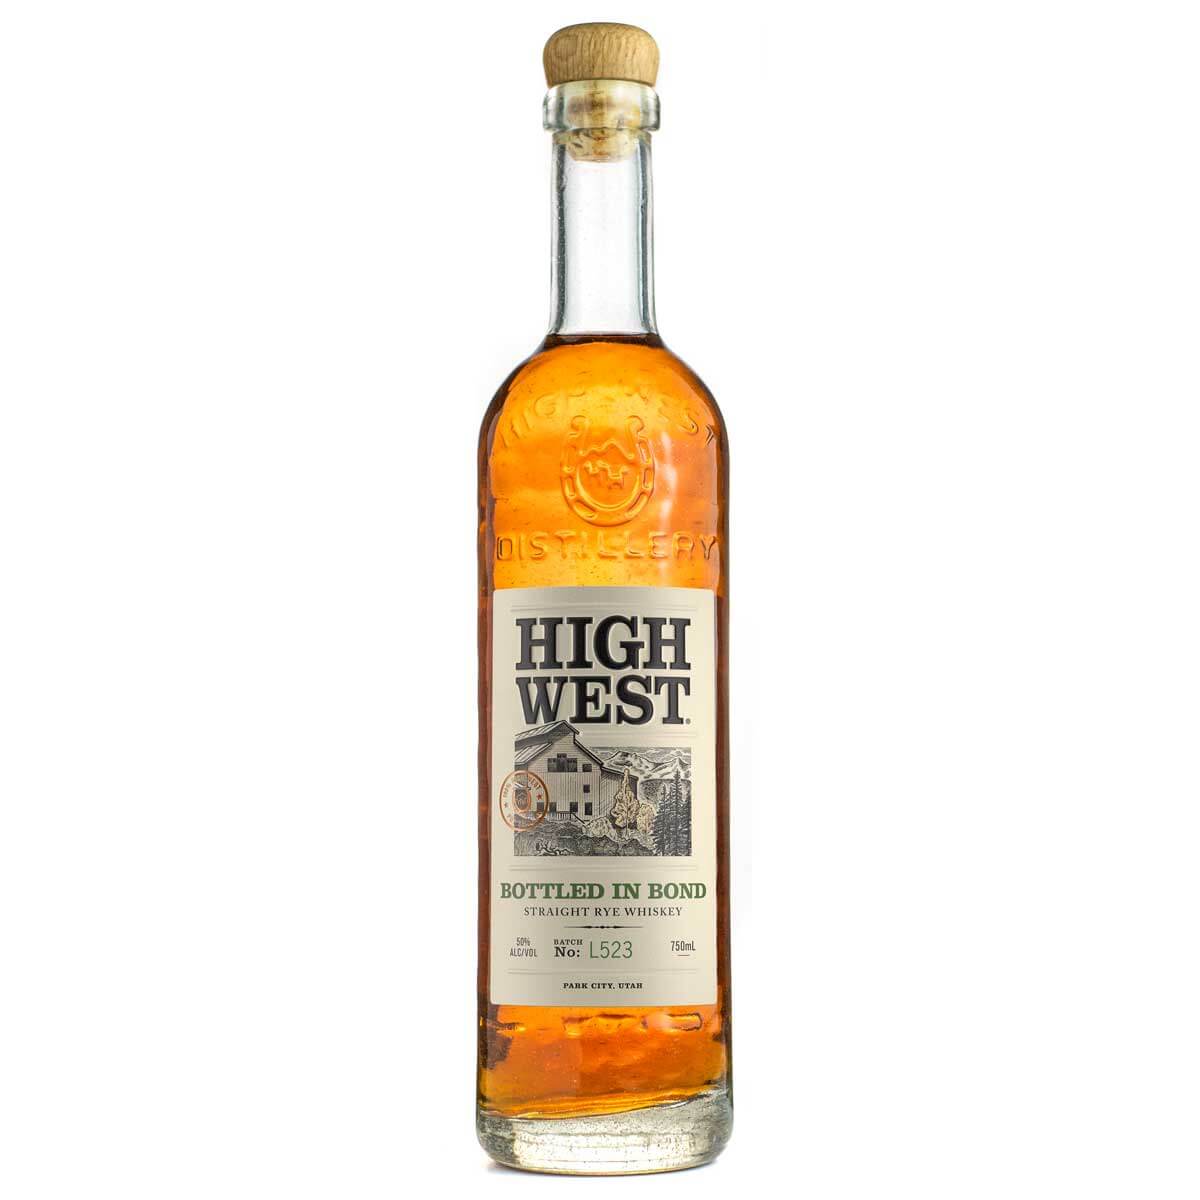 High West Bottled in Bond Rye Whiskey bottle